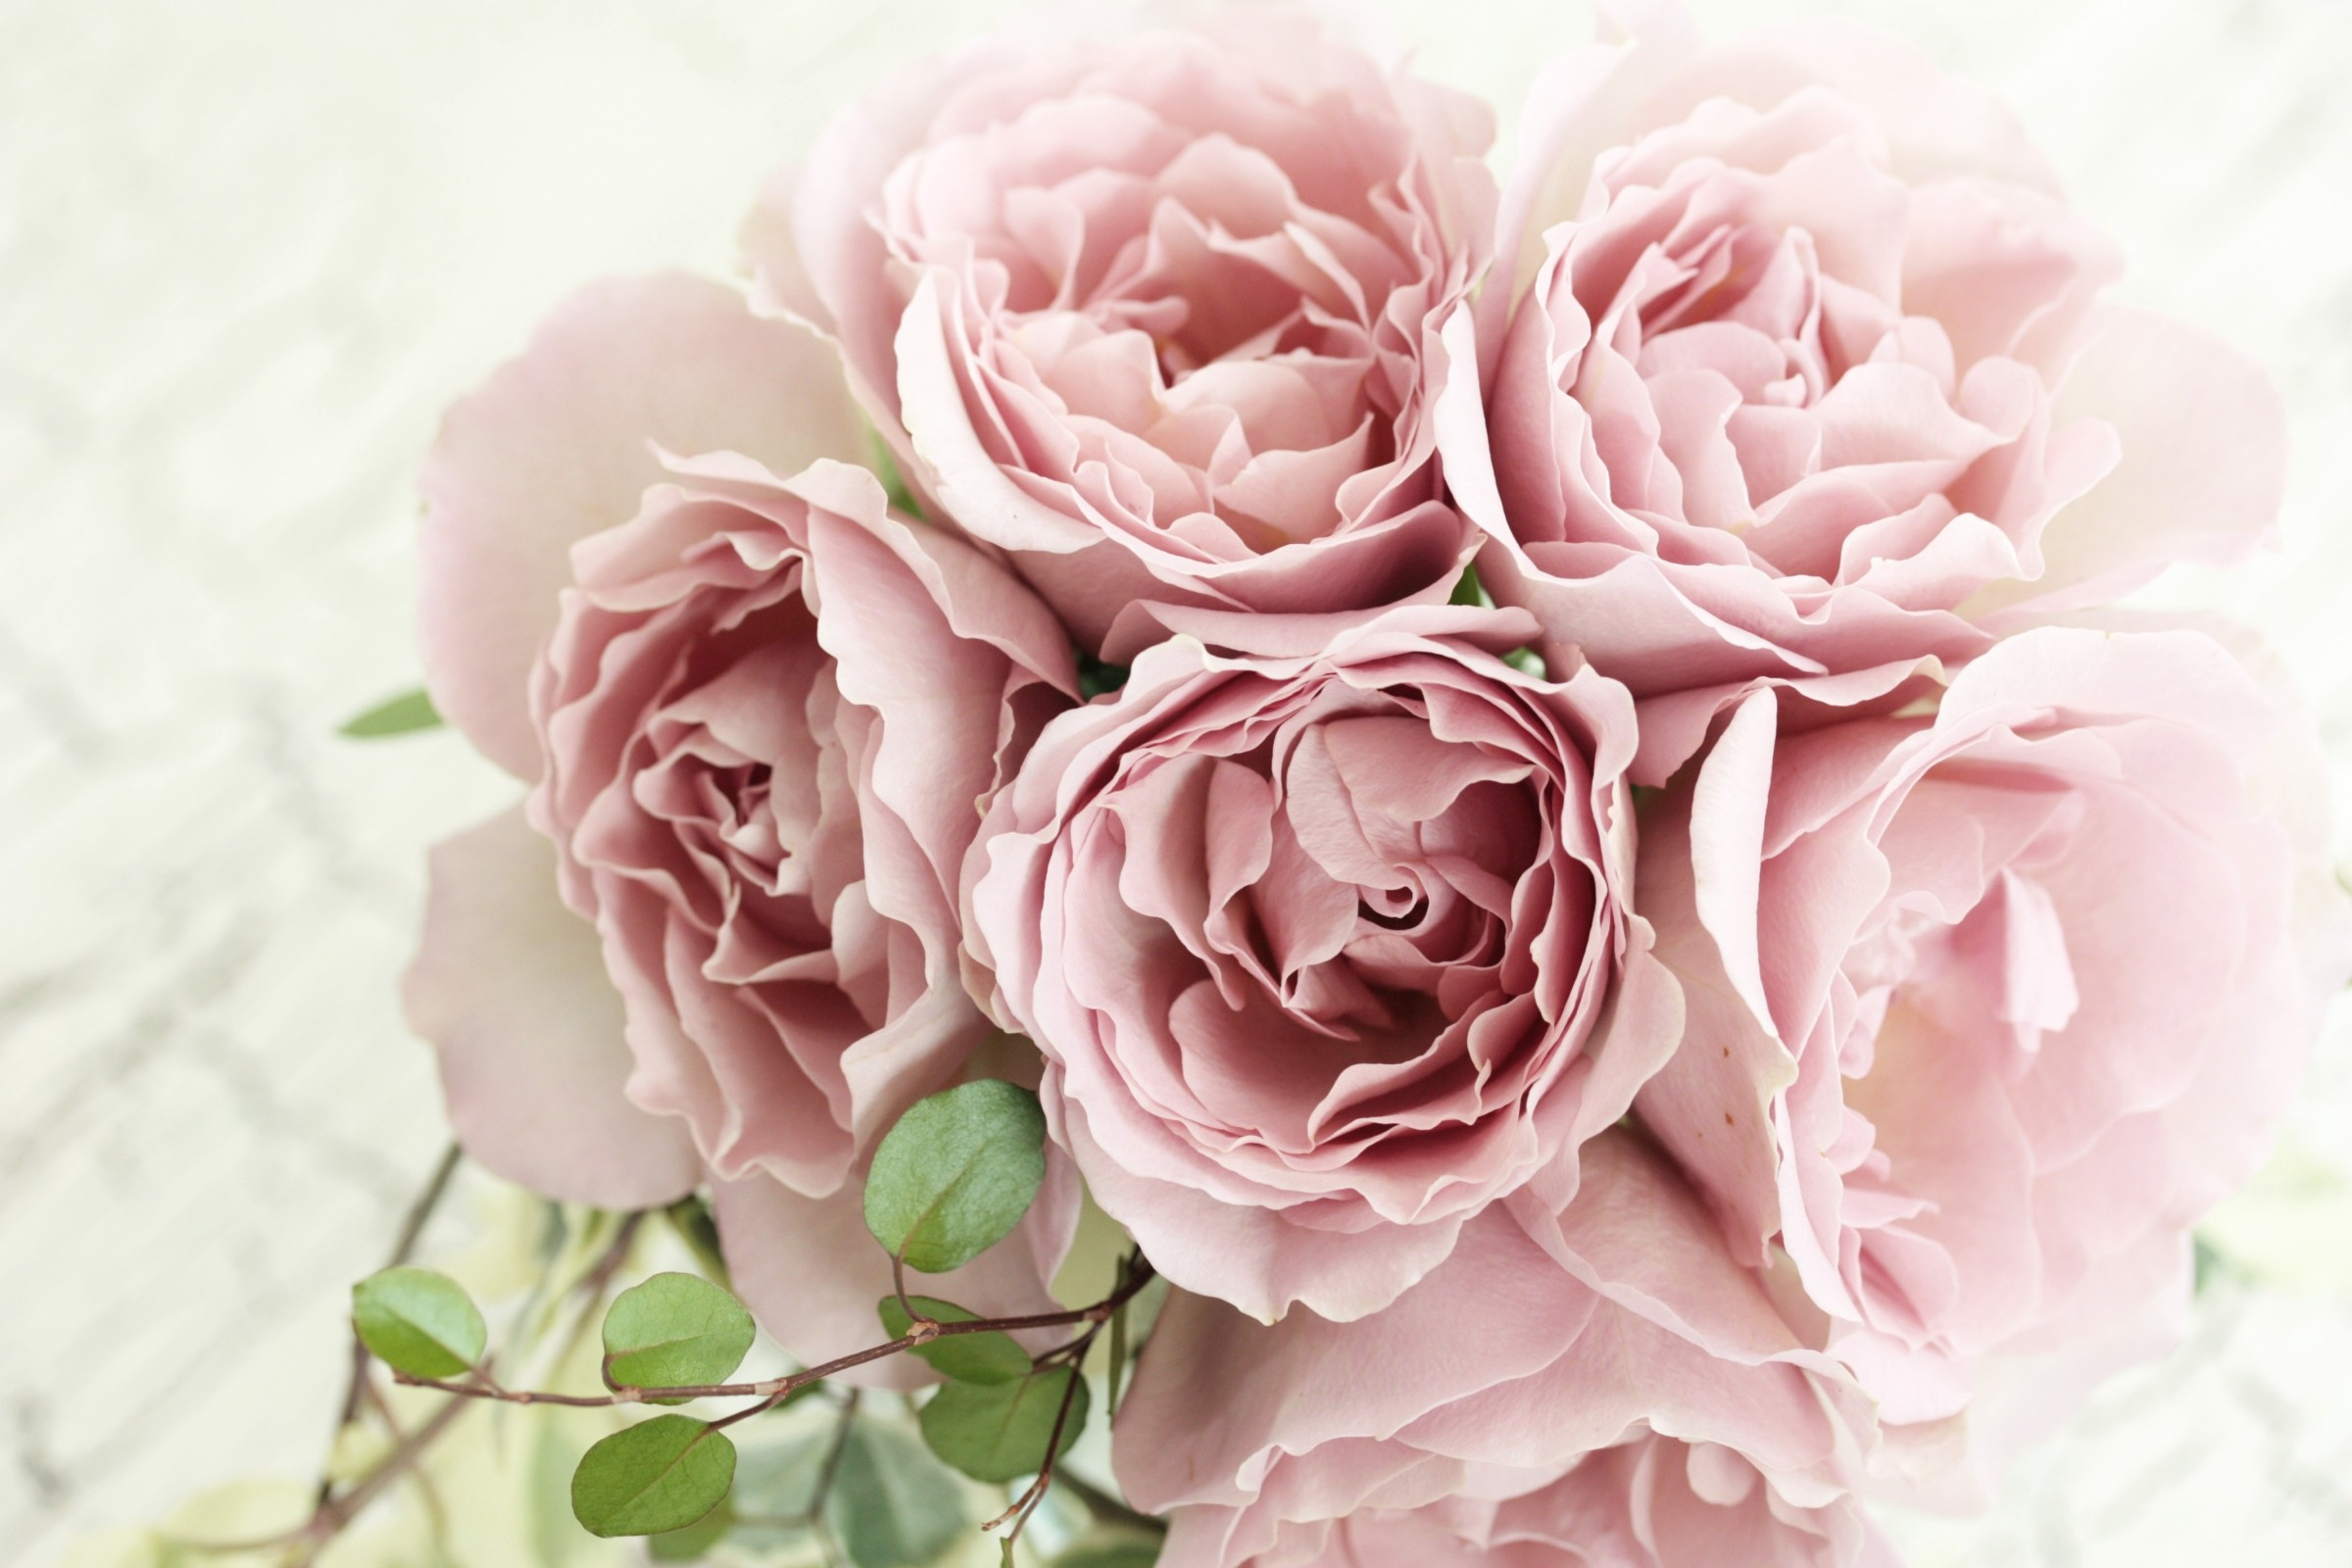 嫩粉色玫瑰花束